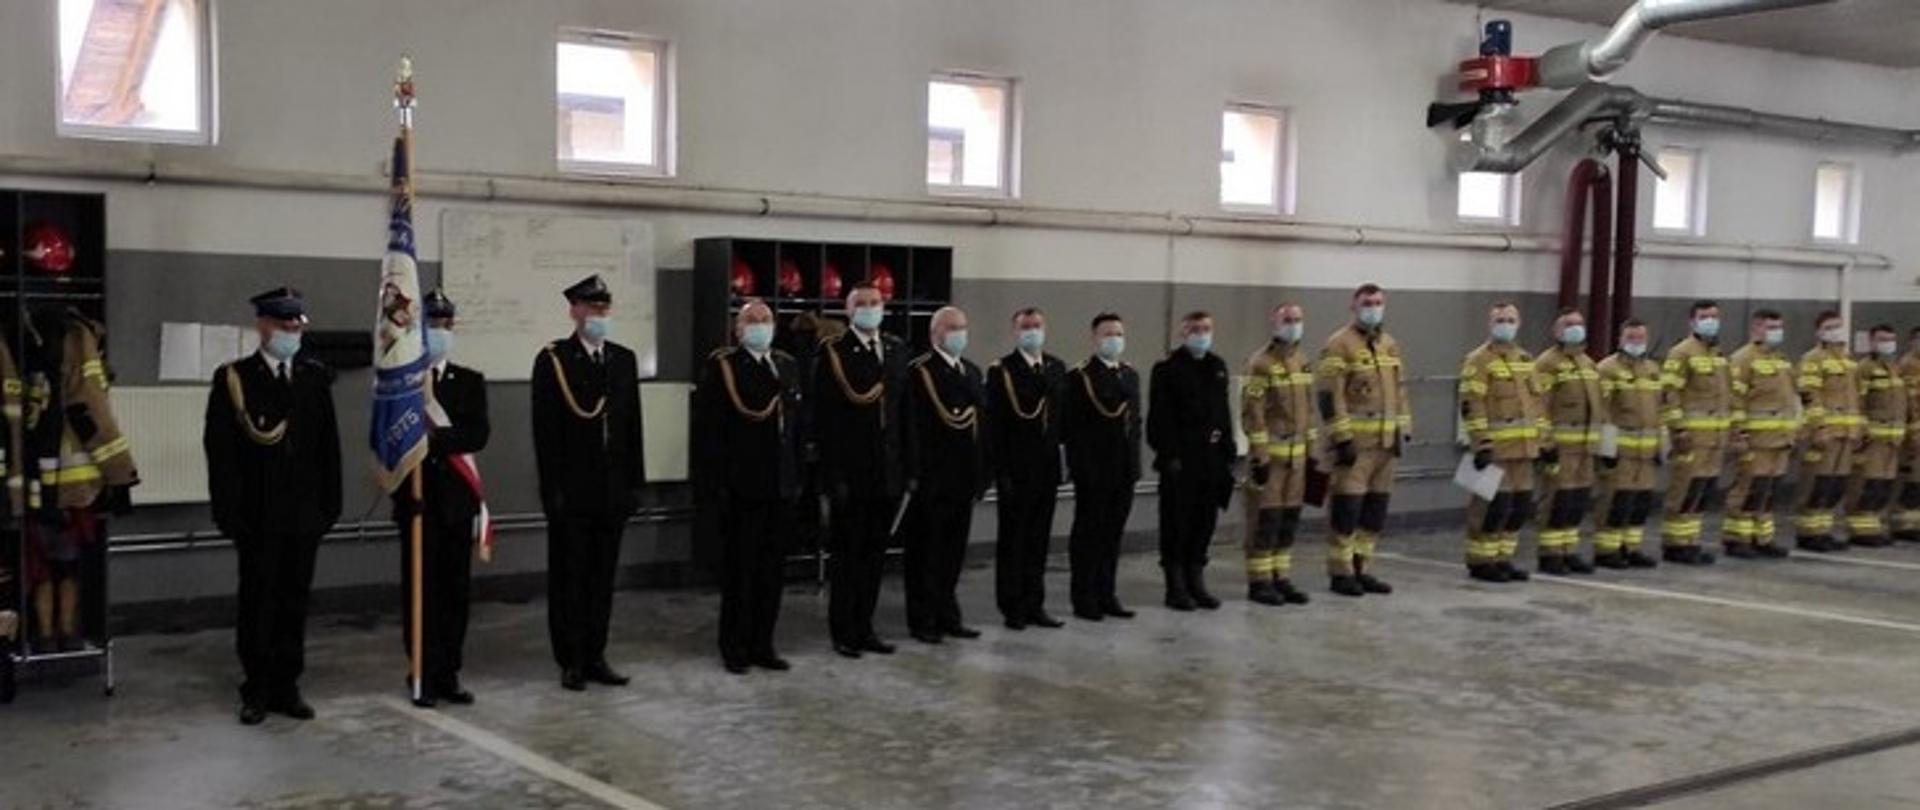 Zdjęcie przedstawia strażaków stojących w szeregu - od lewej trzech strażaków jako poczet sztandarowy w mundurach wyjściowych.